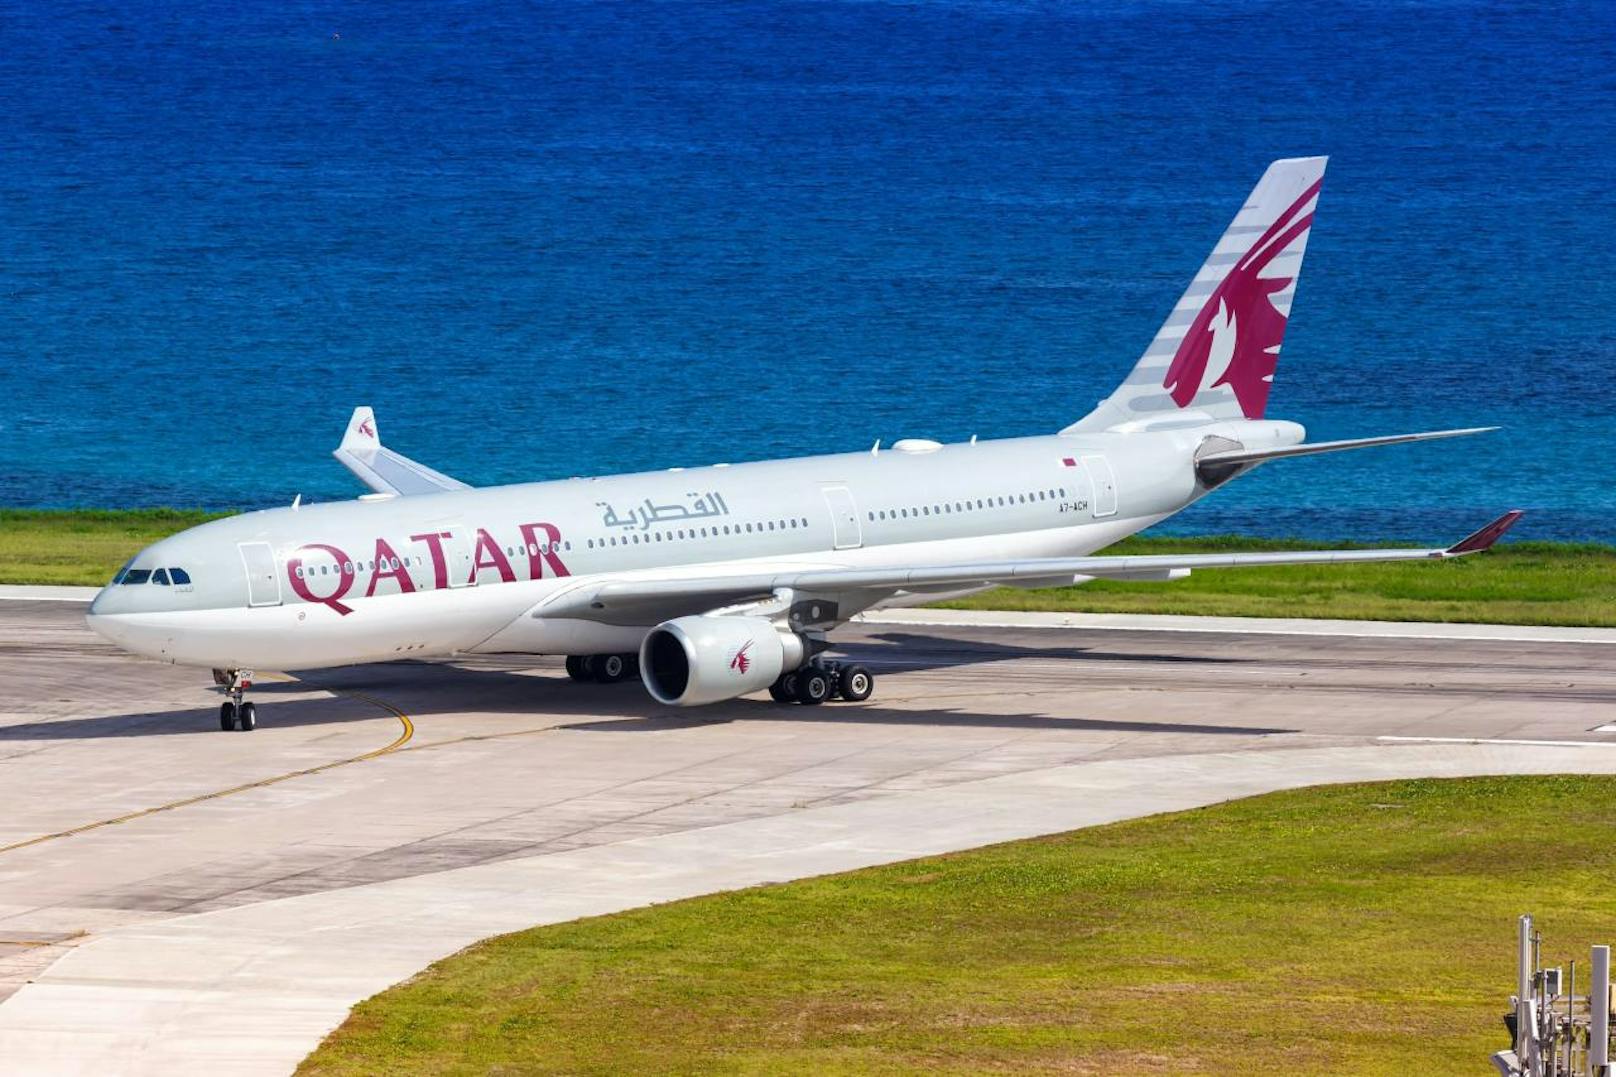 <b>Platz 8: Qatar Airways, Katar</b>
Tripadvisor-Bewertung: "Die Bar im A380 (Business Class) ist das Beste. Der Service, egal in welcher Klasse, ist fantastisch. Das Essen ist für Economy sehr lecker, das Entertainment ist klasse."